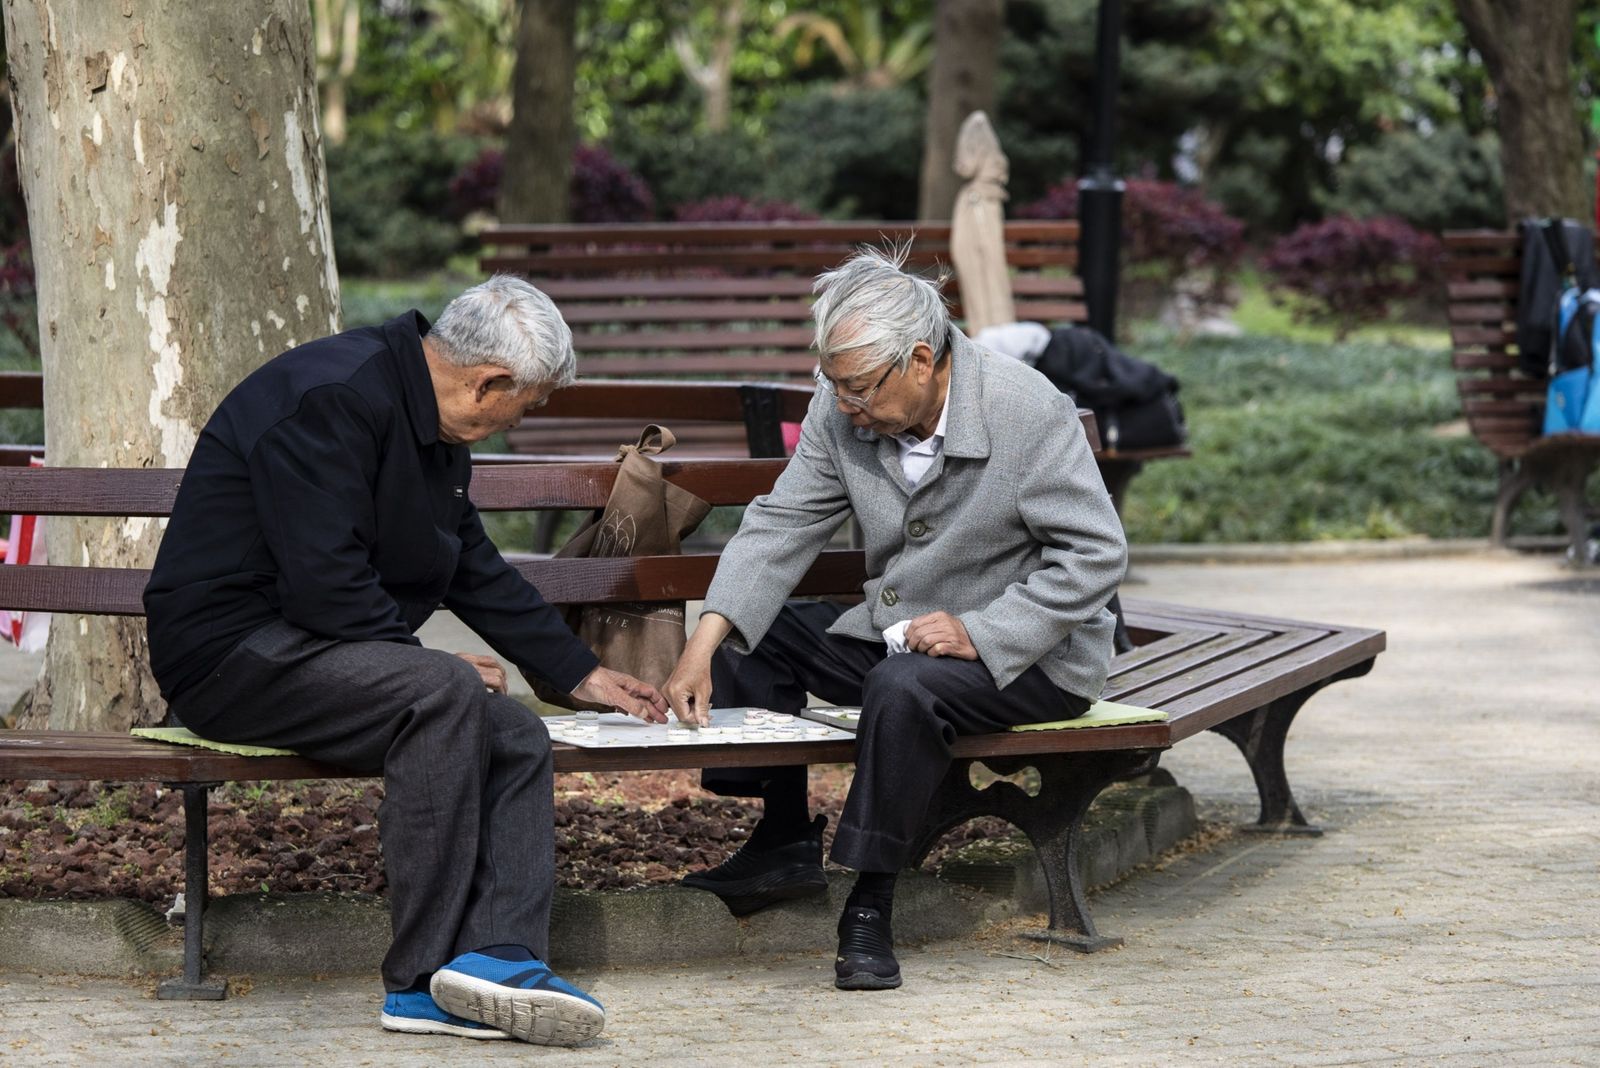 مسنّان يلعبان الشطرنج في حديقة بشنغهاي - 10 أبريل 2021 - Bloomberg